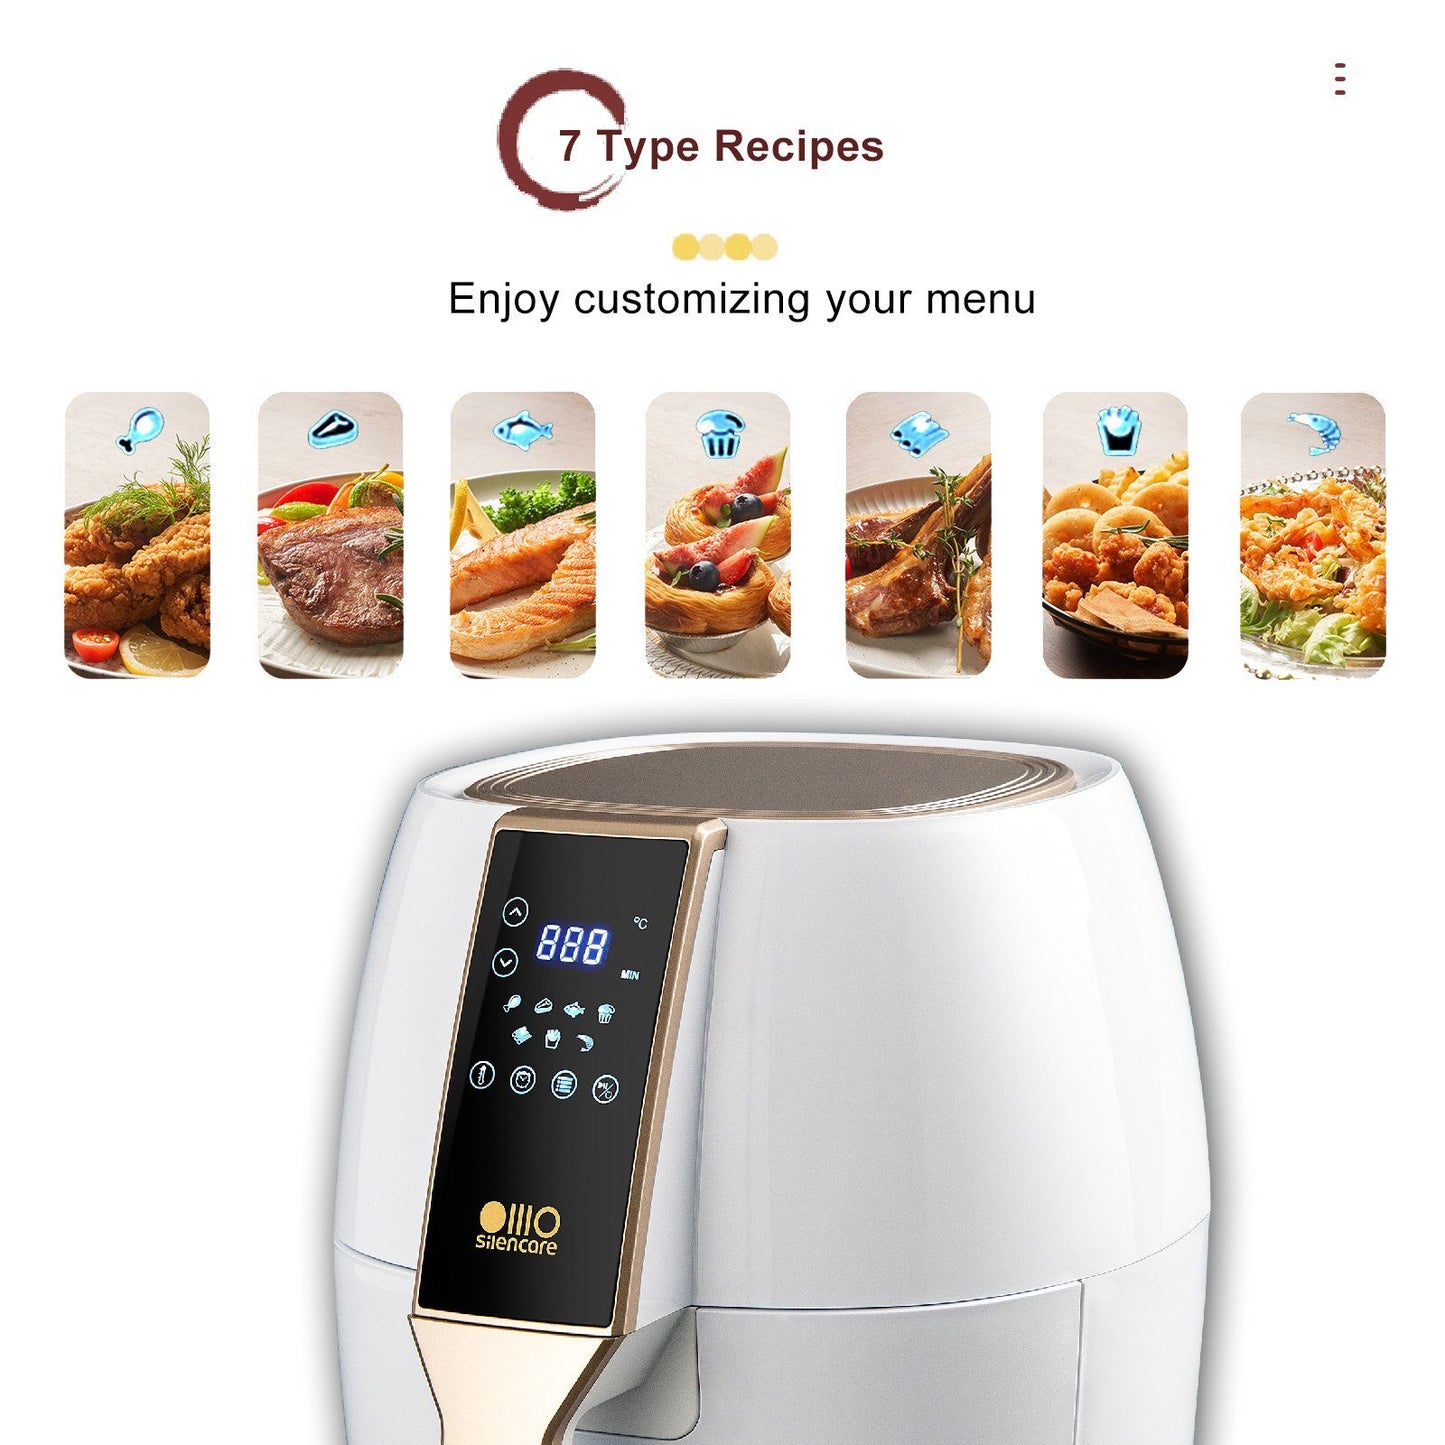 Fine Life Pro Heißluftfritteuse Air Fryer, 1400W Küchengerät, Automatische Abschaltung mit Überhitzungsschutz